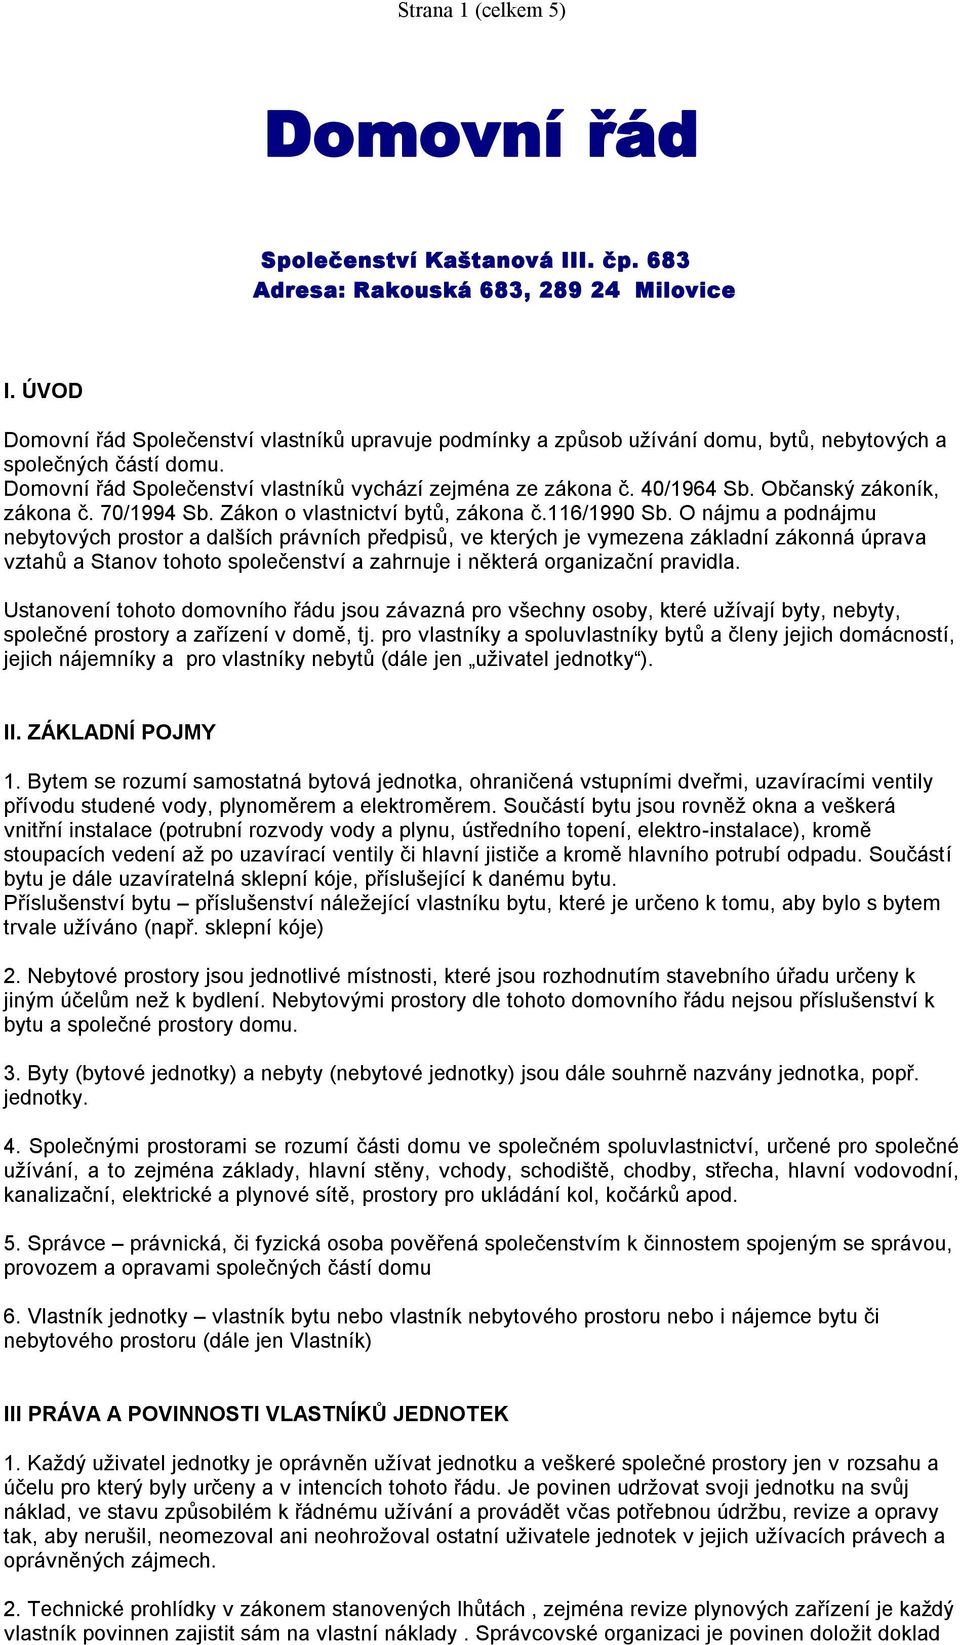 Občanský zákoník, zákona č. 70/1994 Sb. Zákon o vlastnictví bytů, zákona č.116/1990 Sb.